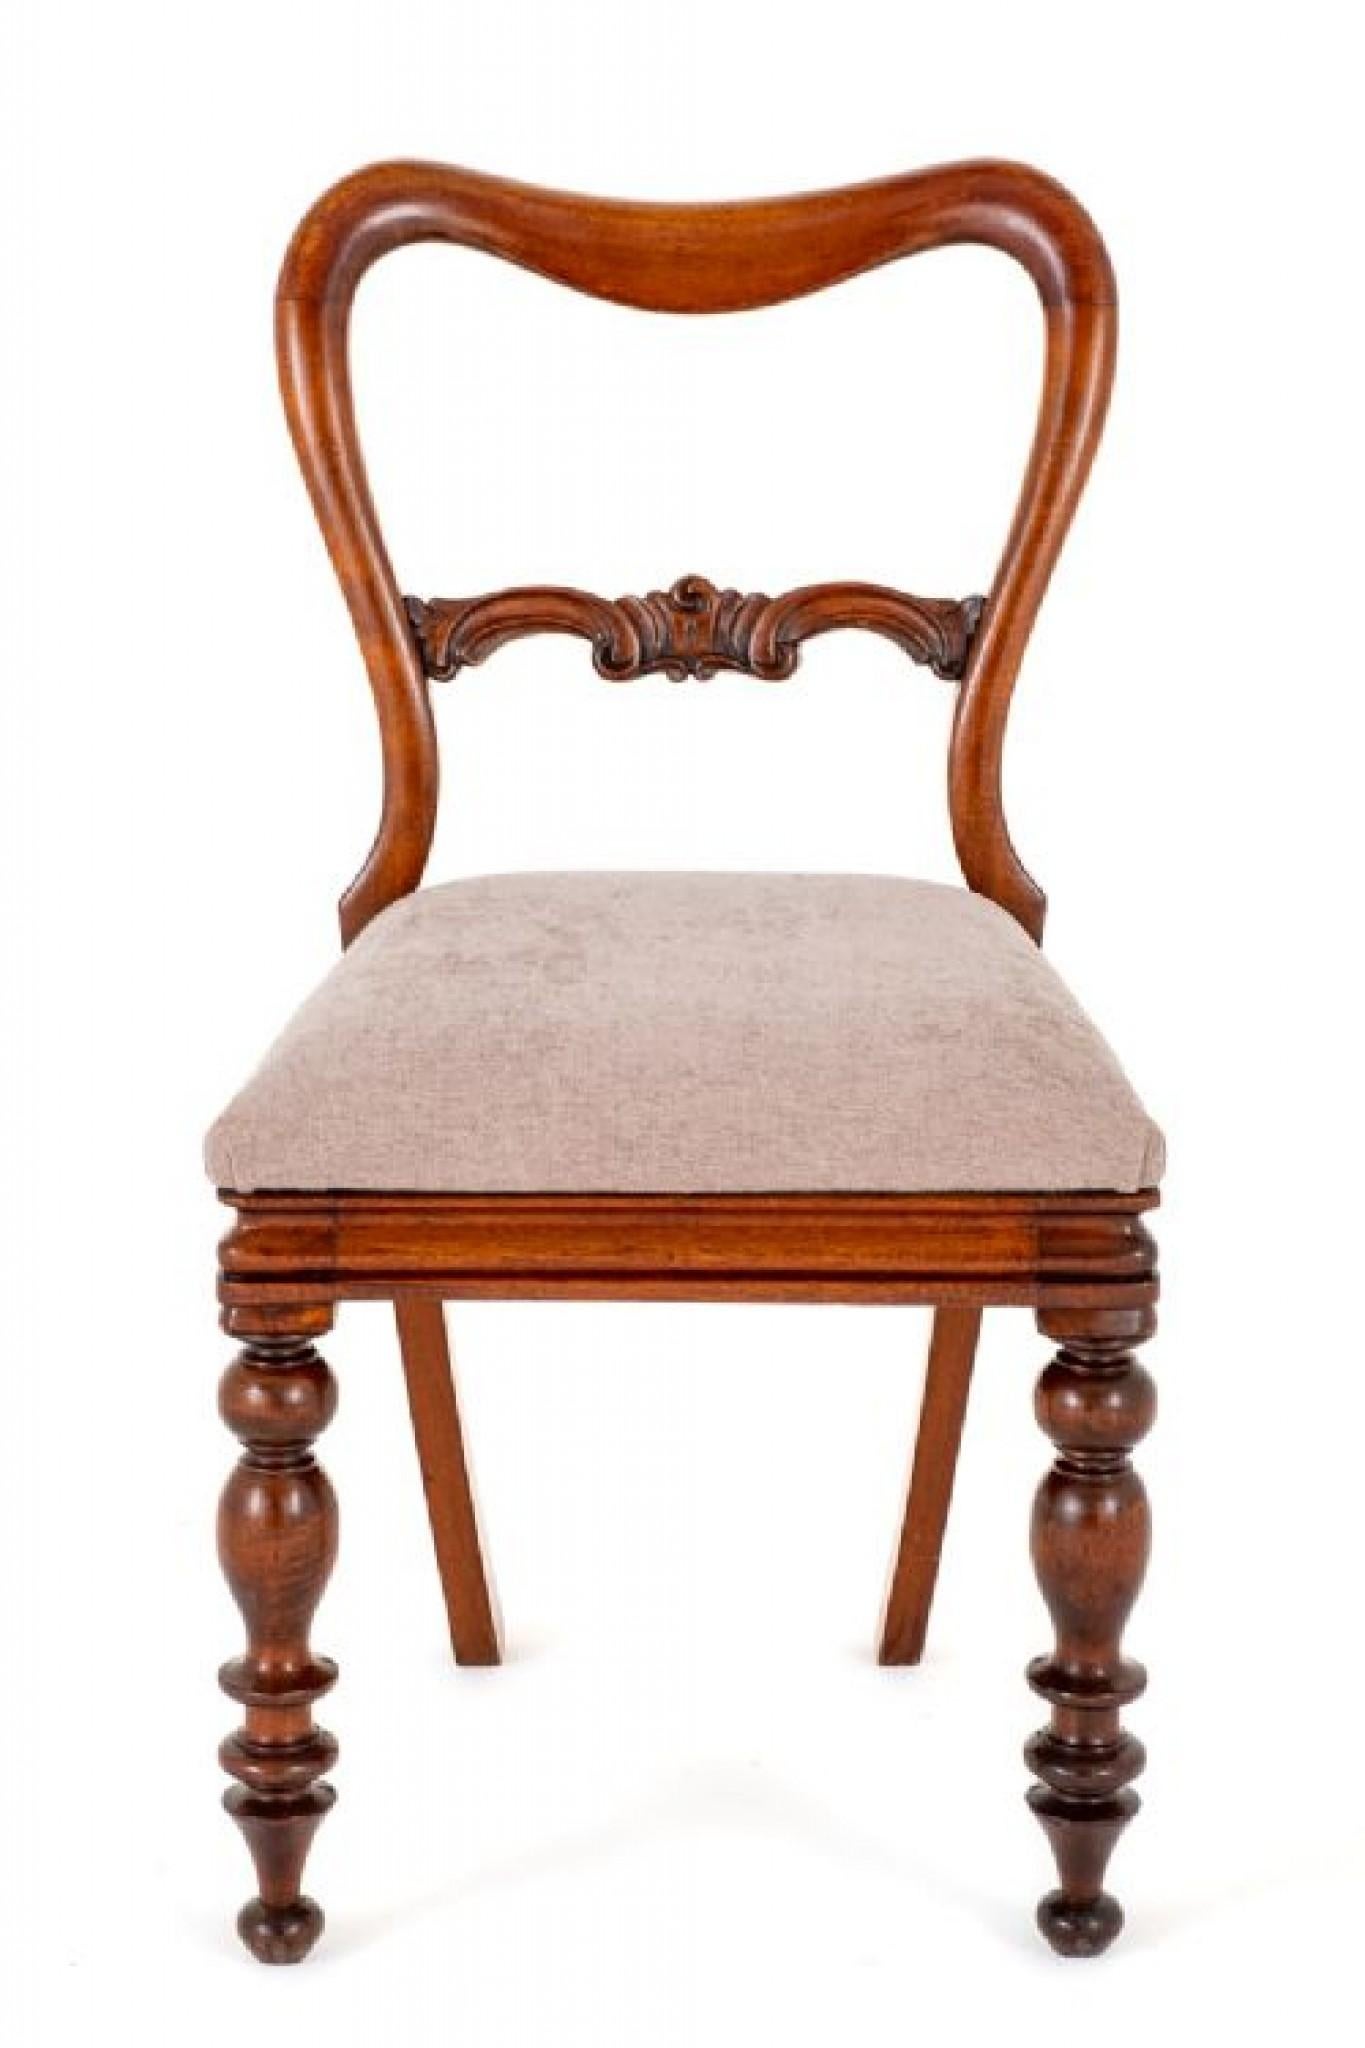 Satz von 6 viktorianischen Mahagoni-Esszimmerstühlen.
CIRCA 1850
Diese Stühle haben gedrehte Vorderbeine und Säbelrückenbeine.
Die Stühle verfügen über kürzlich neu gepolsterte, herausnehmbare Sitze.
Mit geformtem Rücken, geformten Wappenschienen